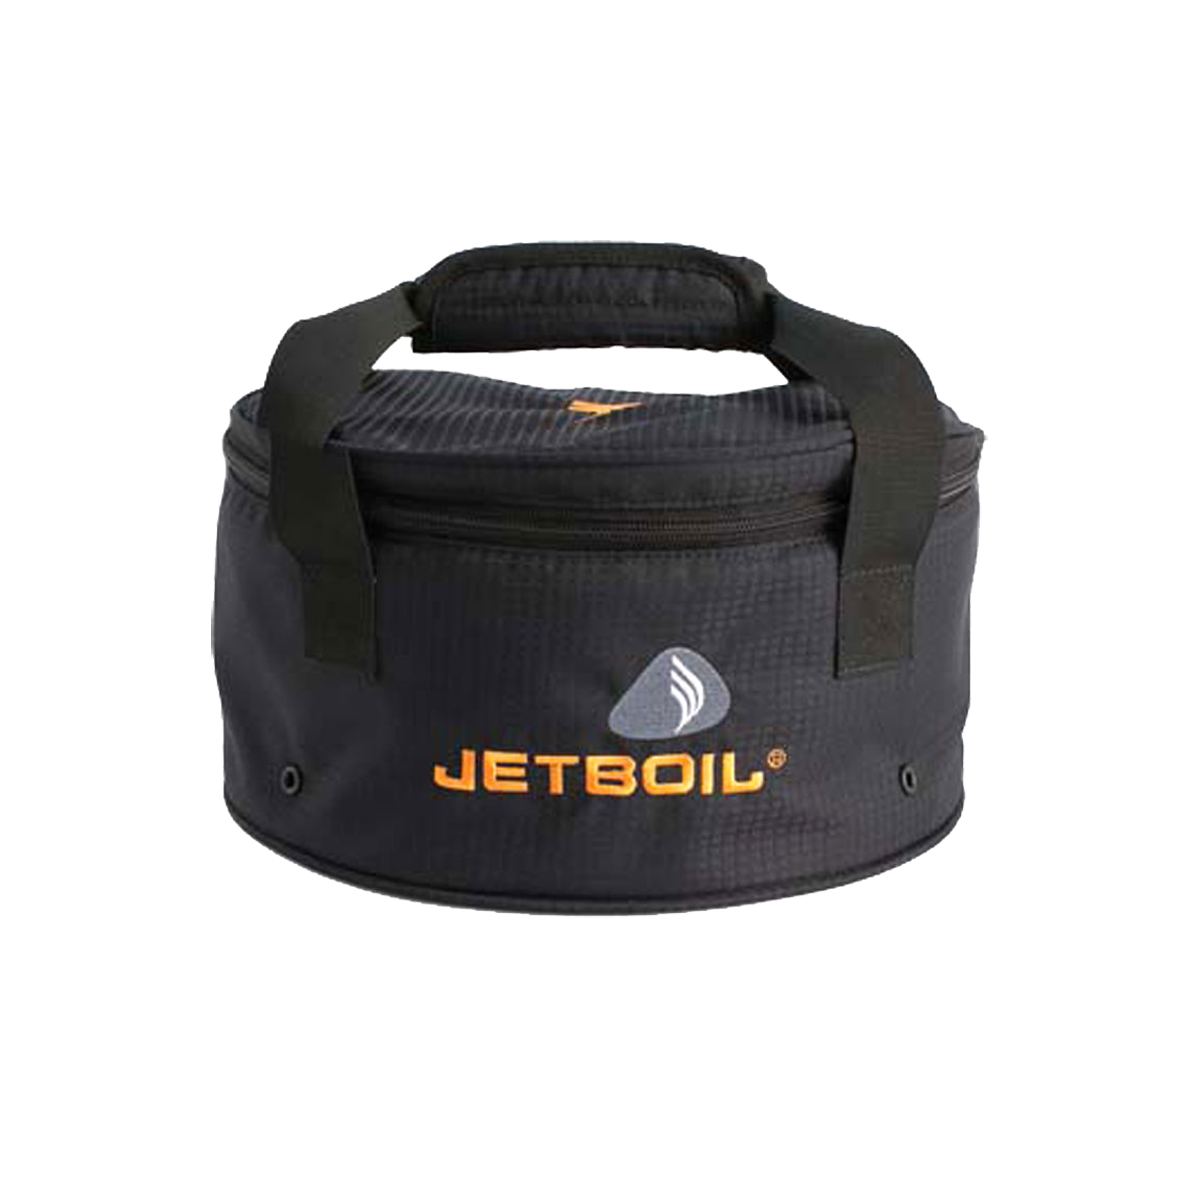 Jetboil Genesis Basecamp System Storage Bag